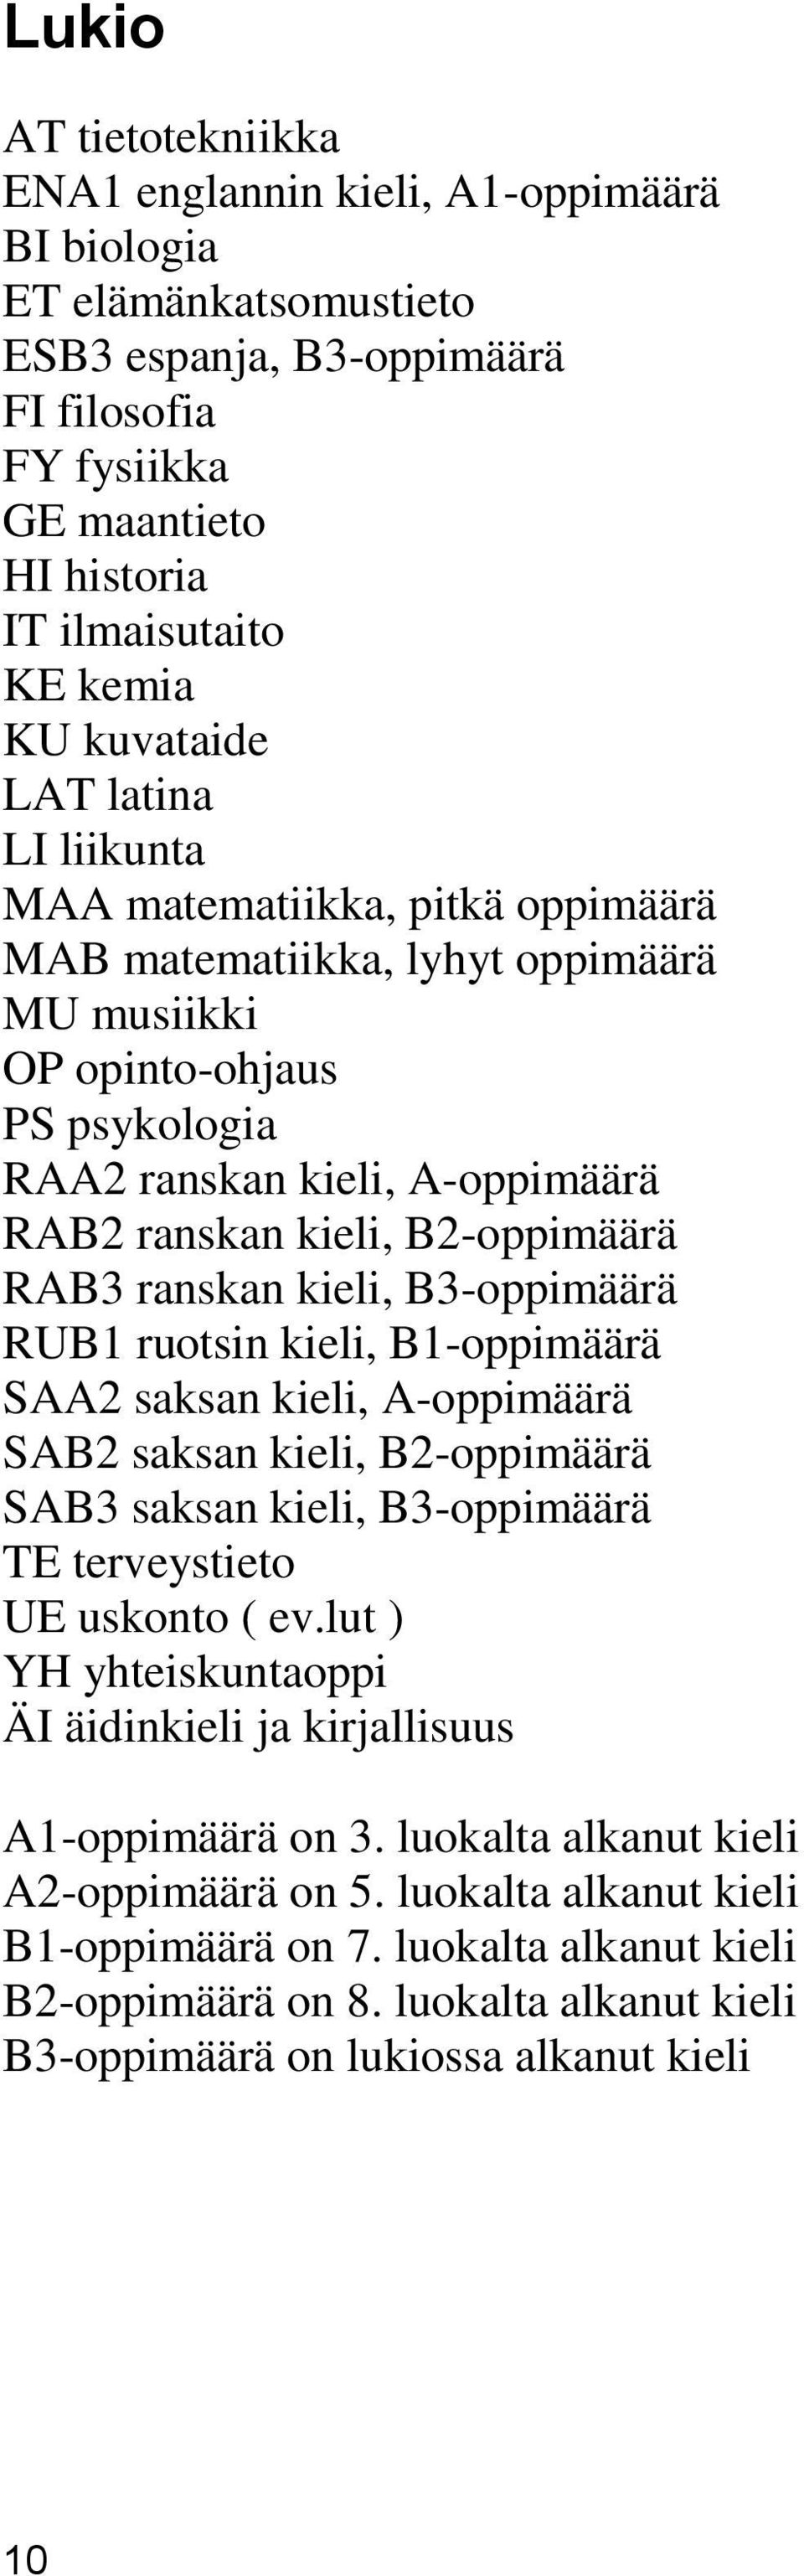 B2-oppimäärä RAB3 ranskan kieli, B3-oppimäärä RUB1 ruotsin kieli, B1-oppimäärä SAA2 saksan kieli, A-oppimäärä SAB2 saksan kieli, B2-oppimäärä SAB3 saksan kieli, B3-oppimäärä TE terveystieto UE